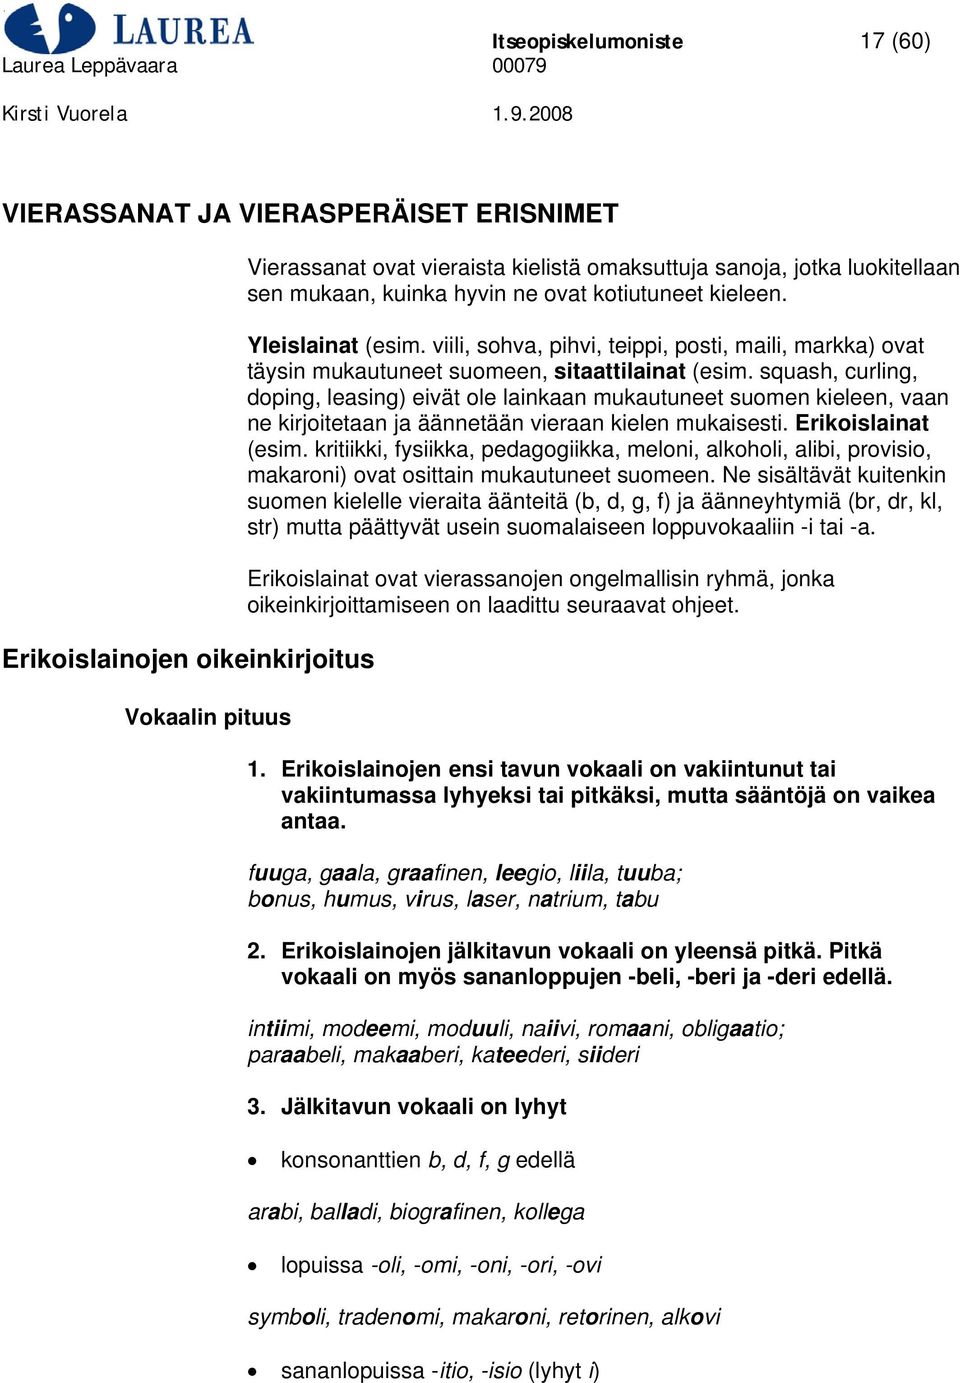 squash, curling, doping, leasing) eivät ole lainkaan mukautuneet suomen kieleen, vaan ne kirjoitetaan ja äännetään vieraan kielen mukaisesti. Erikoislainat (esim.